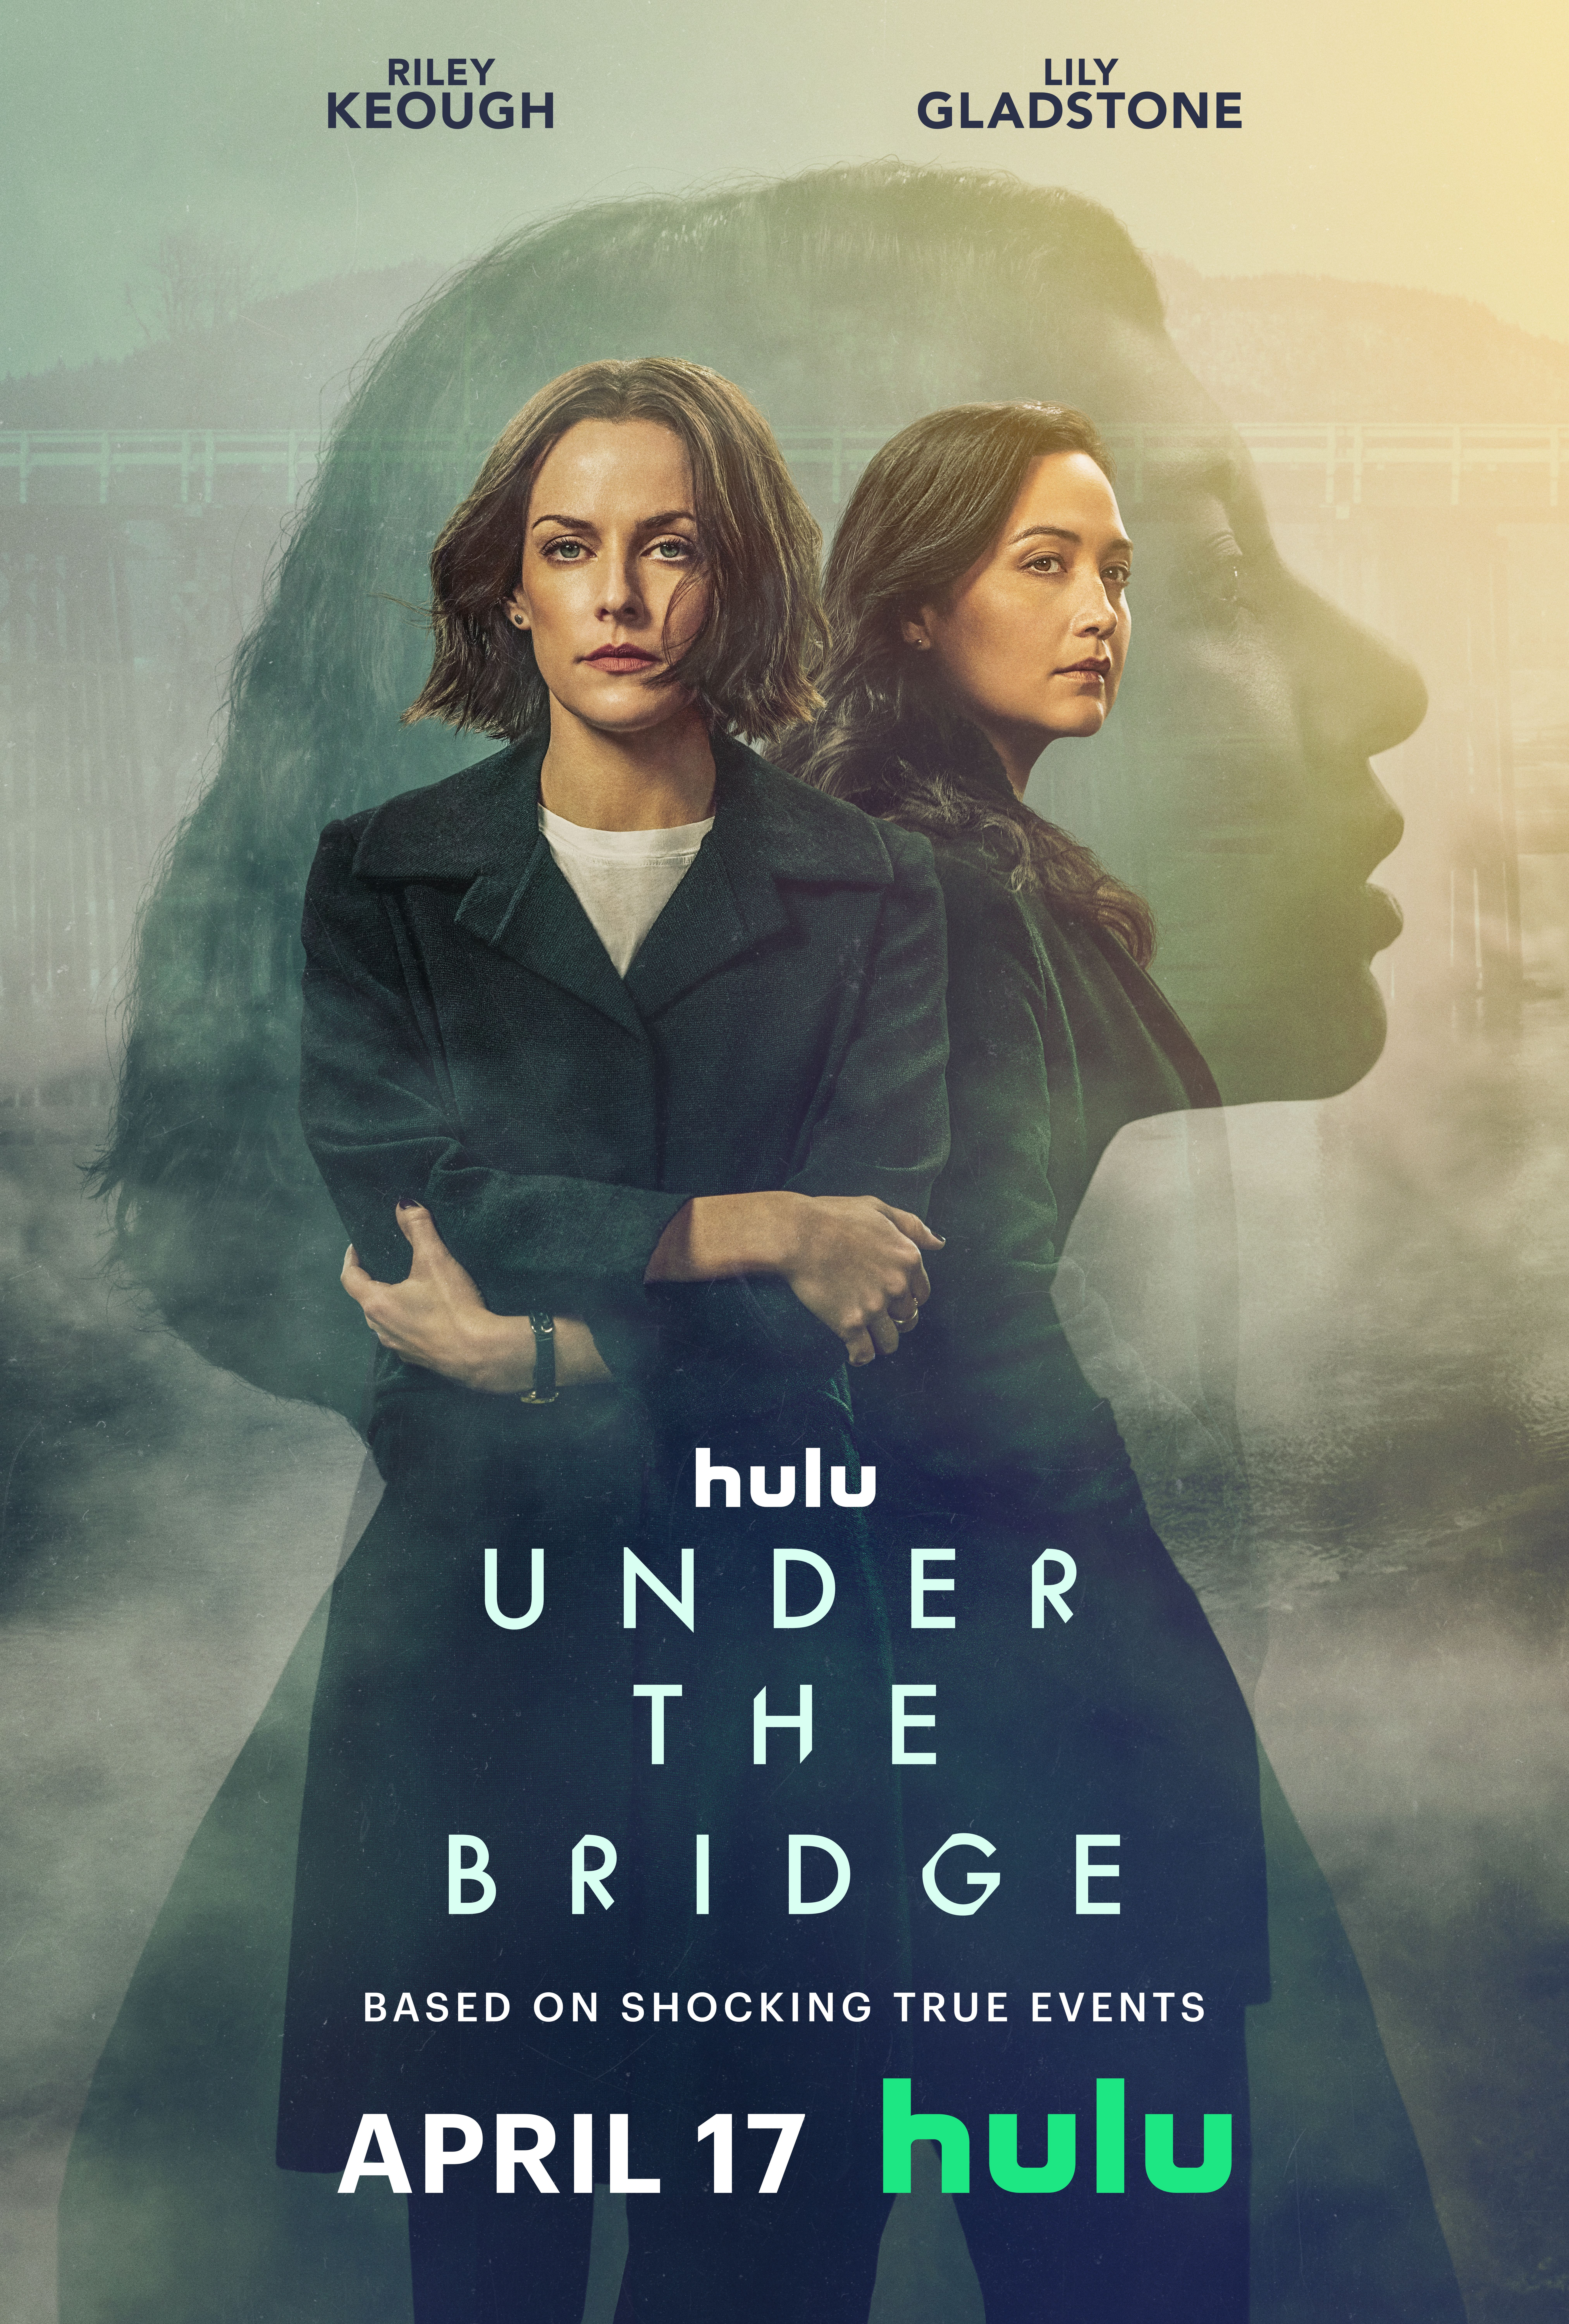 Affiche pour Under The Bridge mettant en vedette Lily Gladstone et Riley Keough devant la silhouette d'une femme